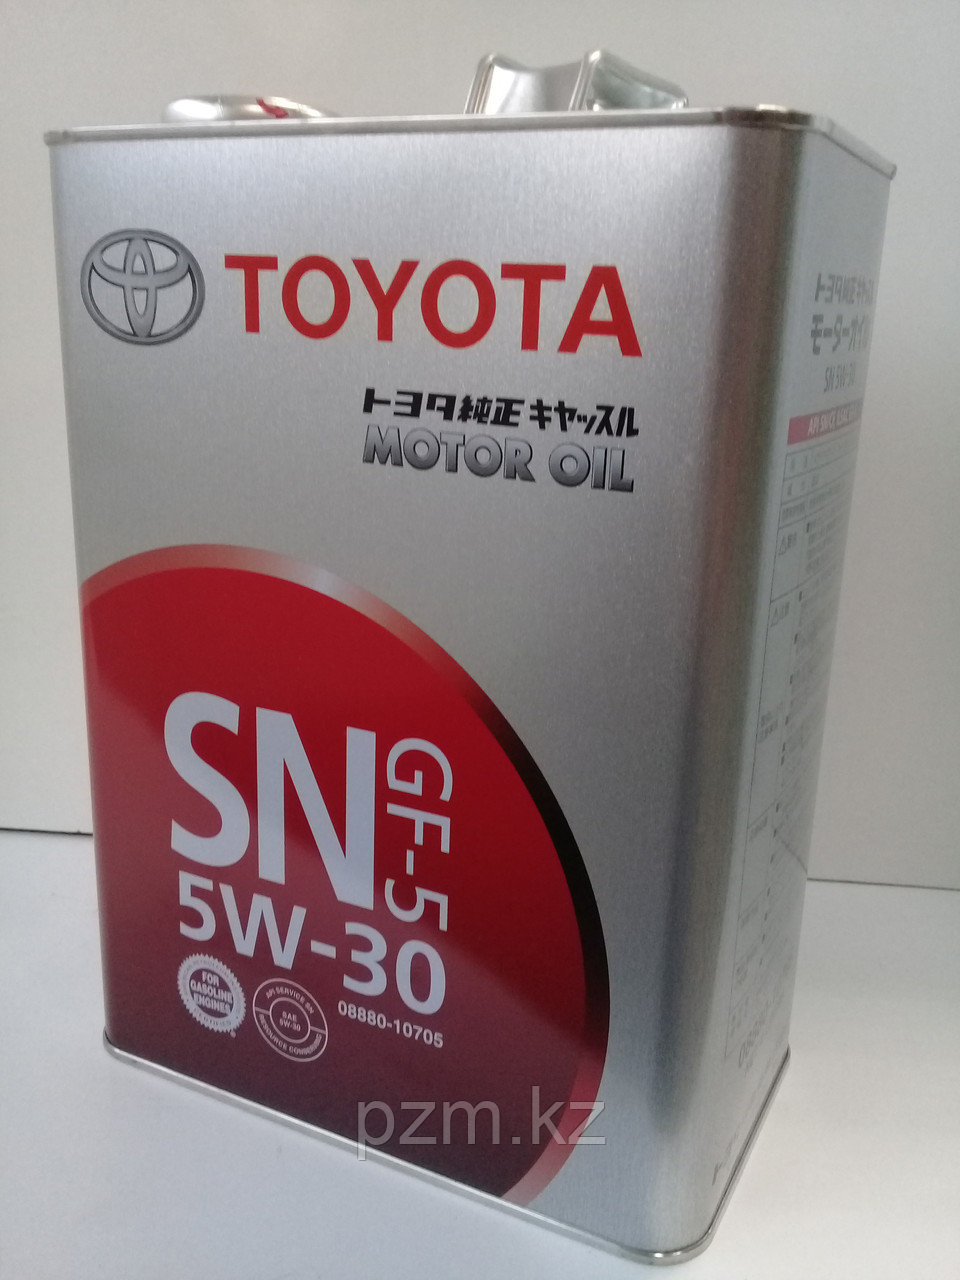 Замена масла в двигателе Toyota Corolla (масло + фильтр)  оригинальное моторное масло тойота 5W30